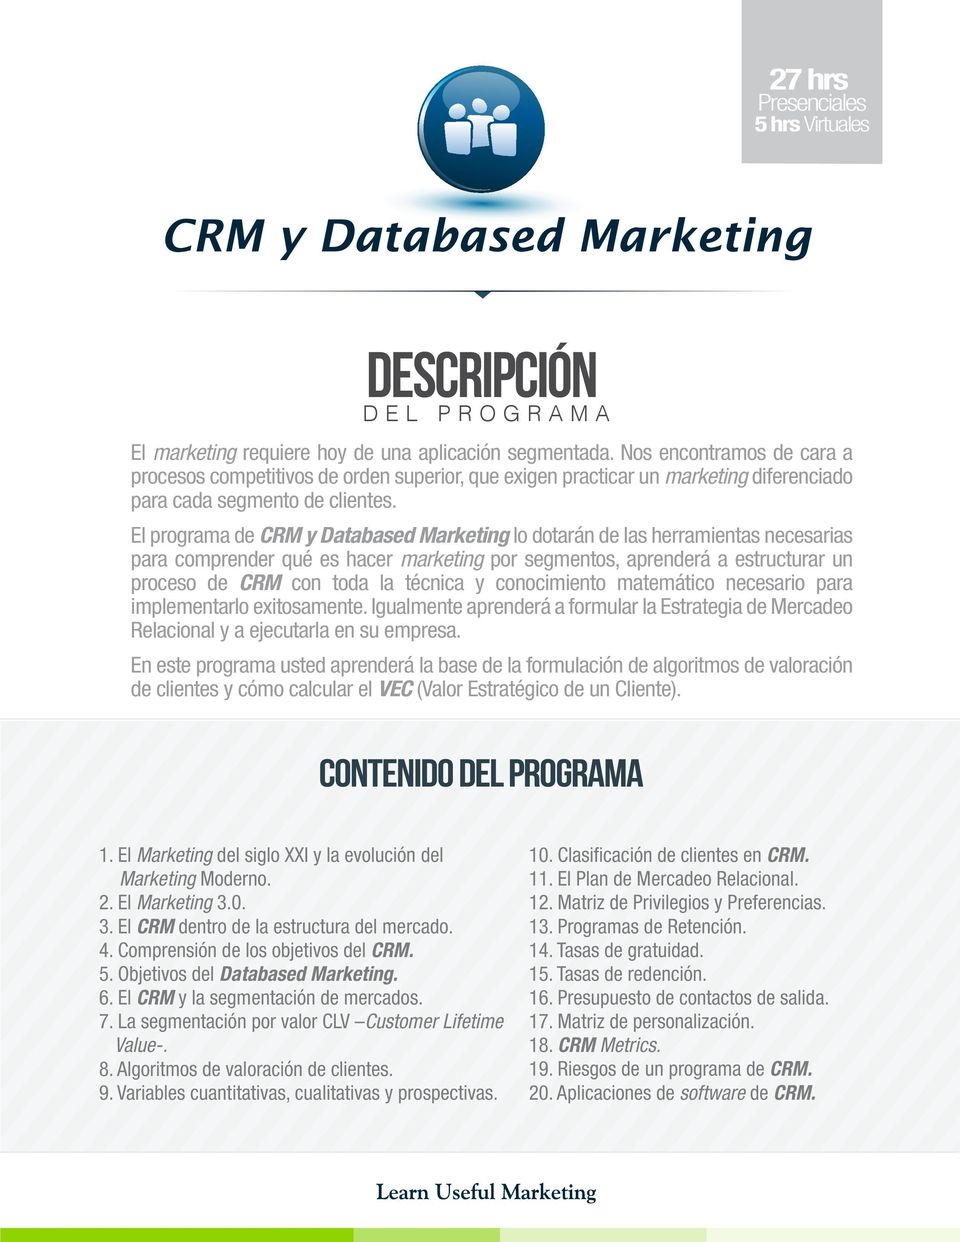 El programa de CRM y Databased Marketing lo dotarán de las herramientas necesarias para comprender qué es hacer marketing por segmentos, aprenderá a estructurar un proceso de CRM con toda la técnica